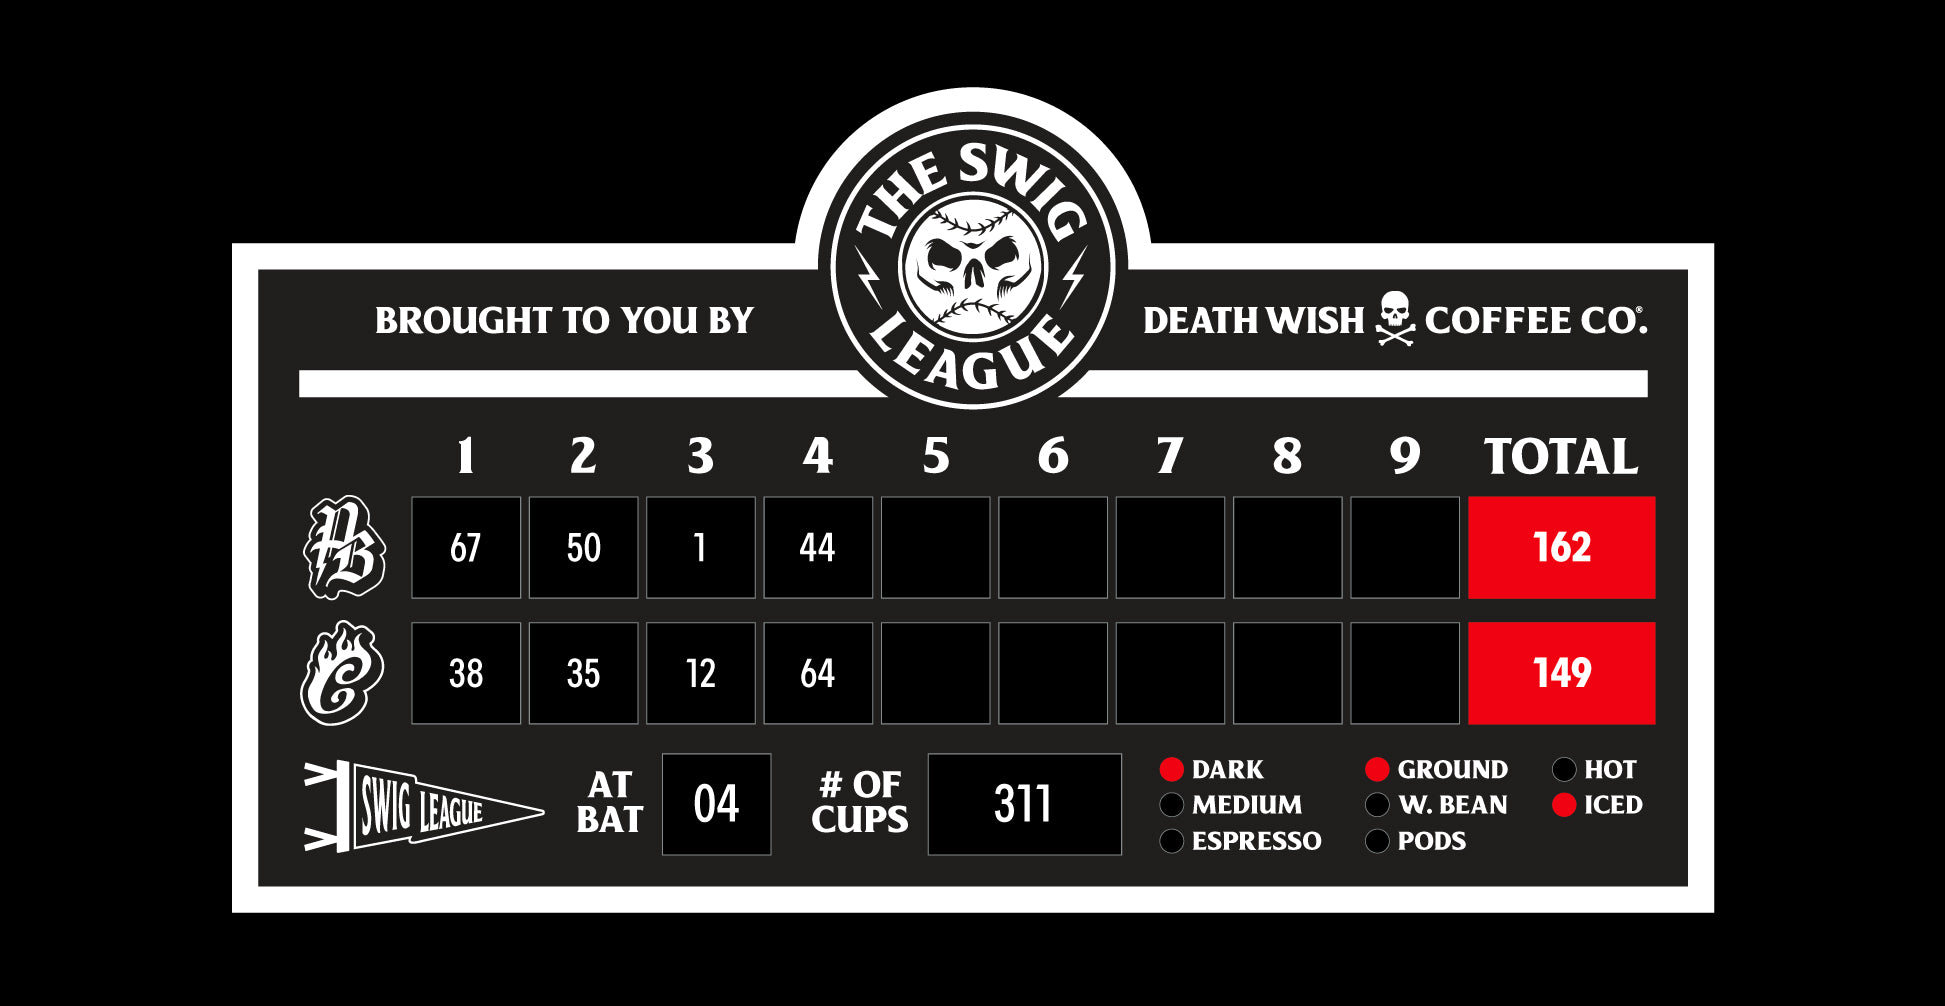 Death Wish Coffee Swig League Scoreboard - Week 4